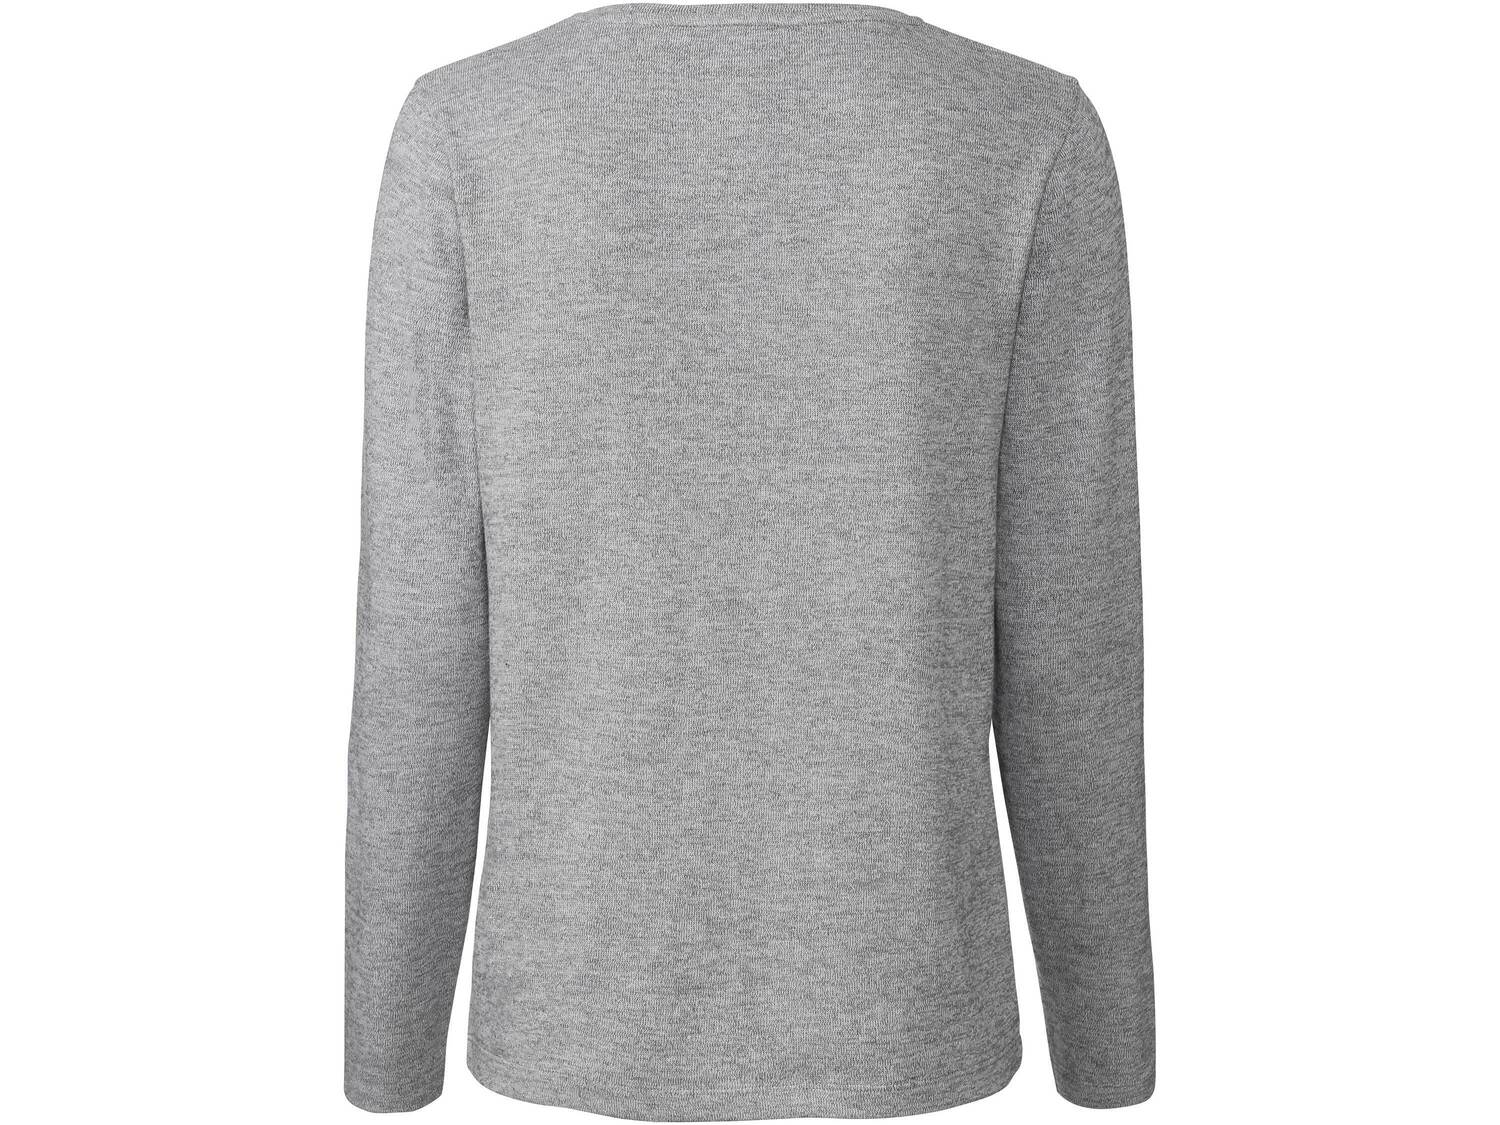 Sweter z wiskozą Esmara, cena 34,99 PLN 
- rozmiary: XS-L
- przyjemny w dotyku ...